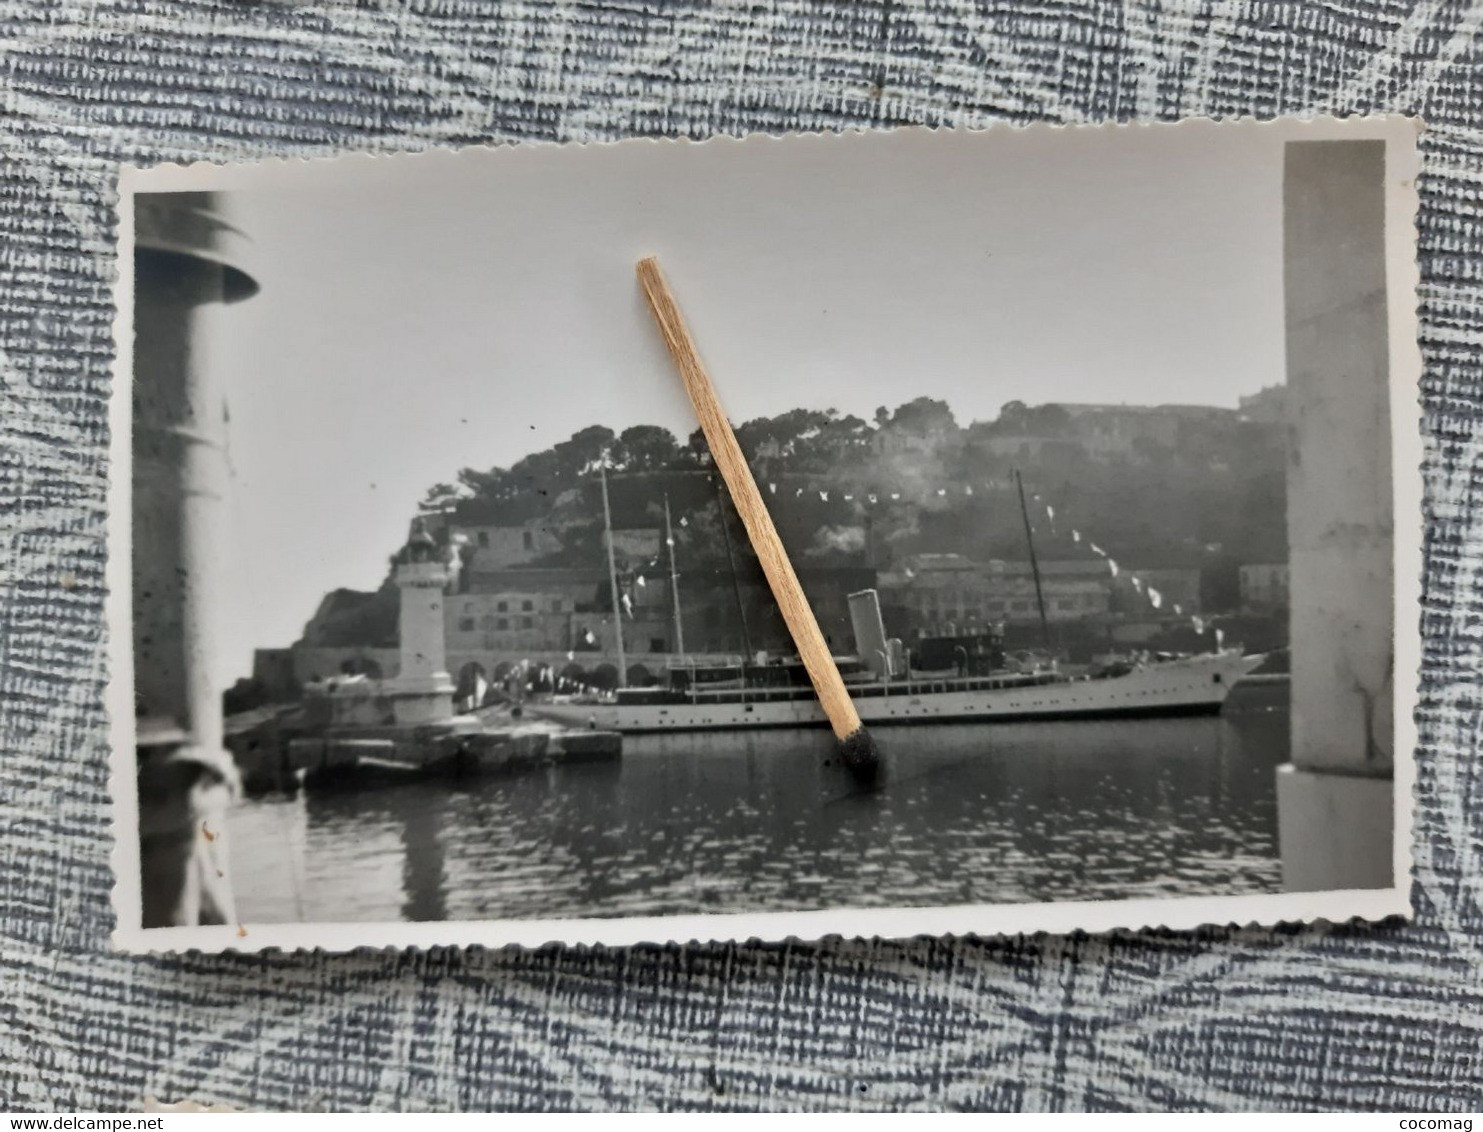 NAVIRE MILITAIRE FREGATE LA DECOUVERTE PHOTO 1948 NAVIRE YACHT  DANS LE PORT DE MONACO  11.5 X 7.2 CM - Boats